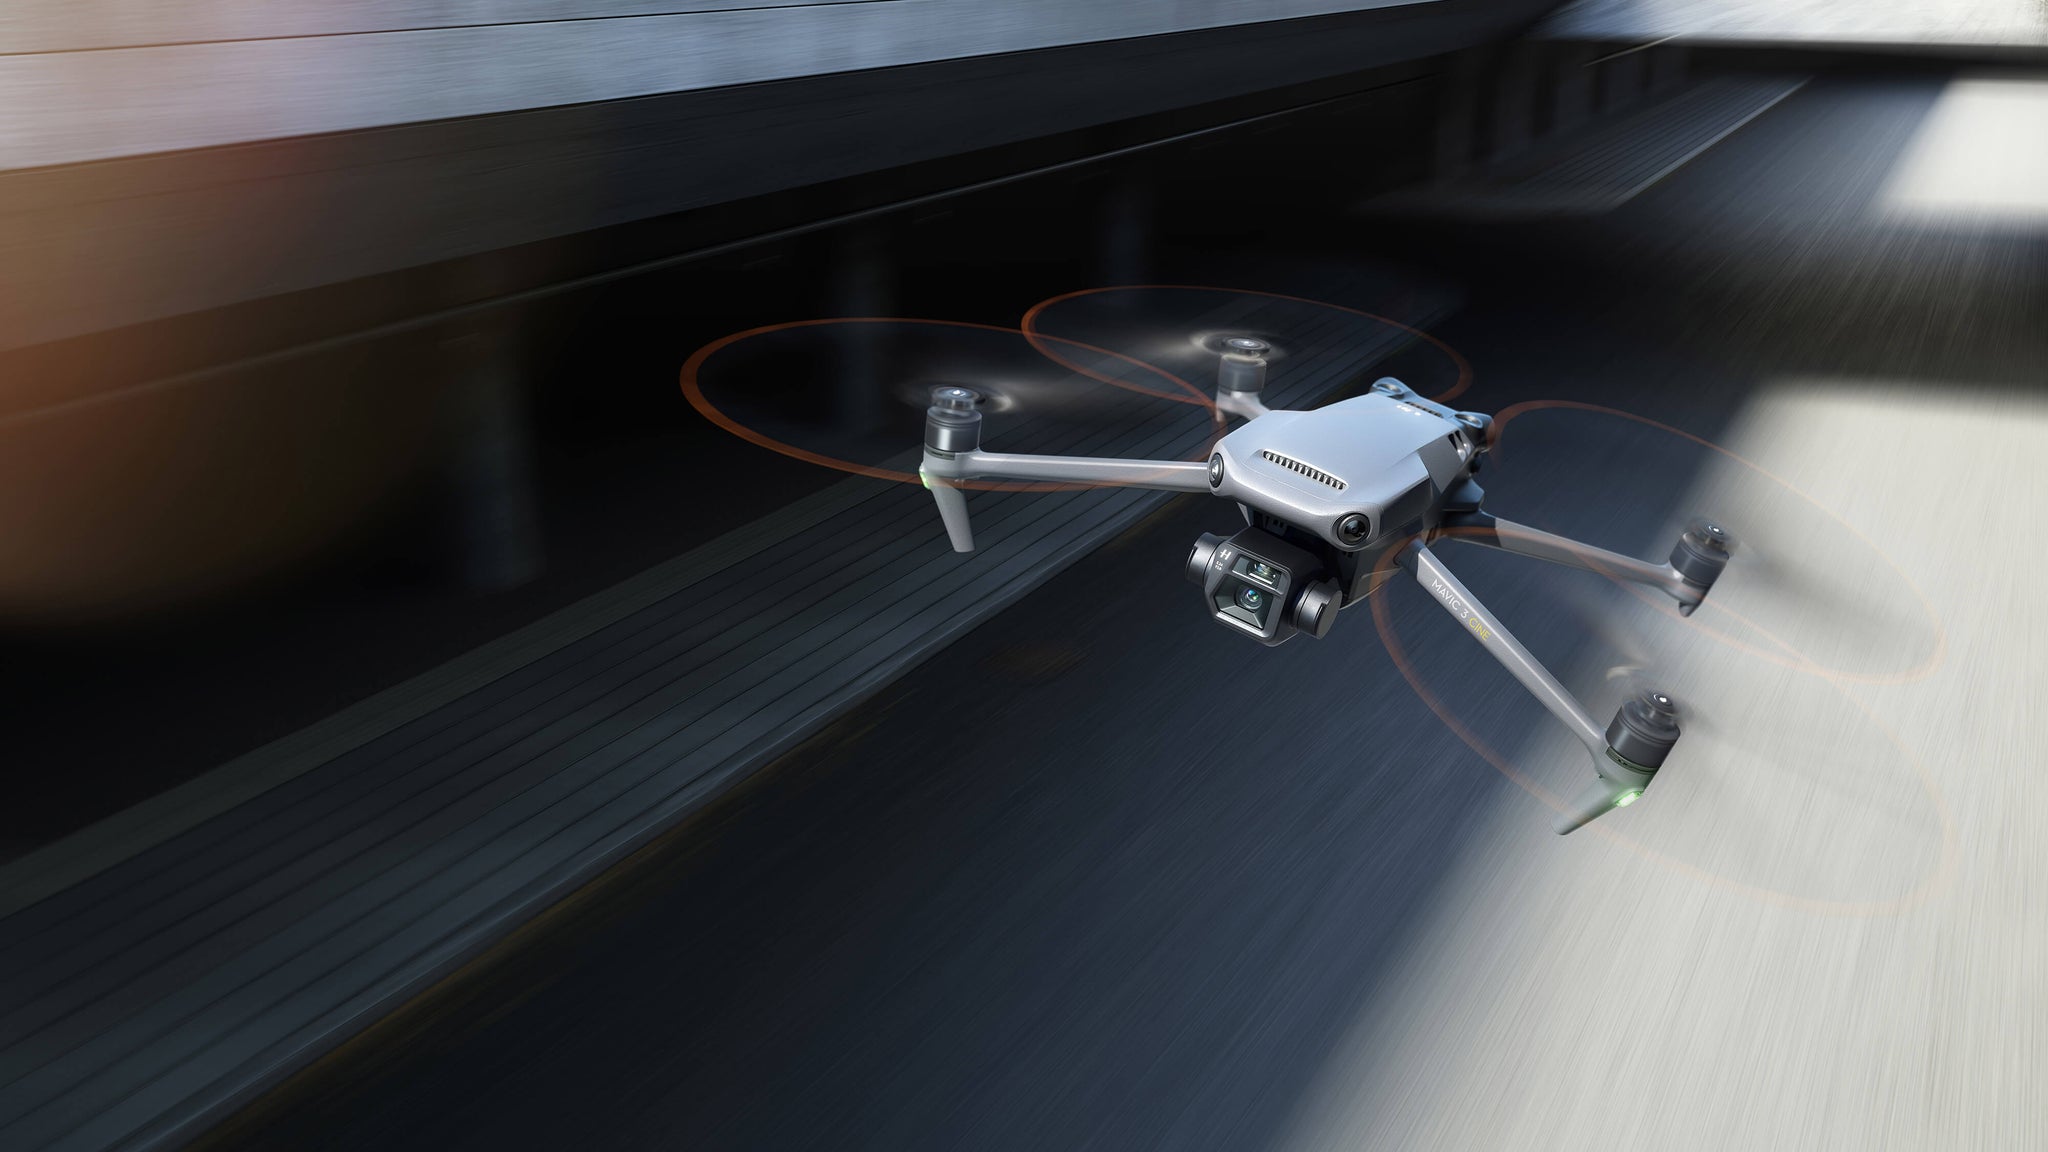 Hoe bestuurt je een DJI drone?